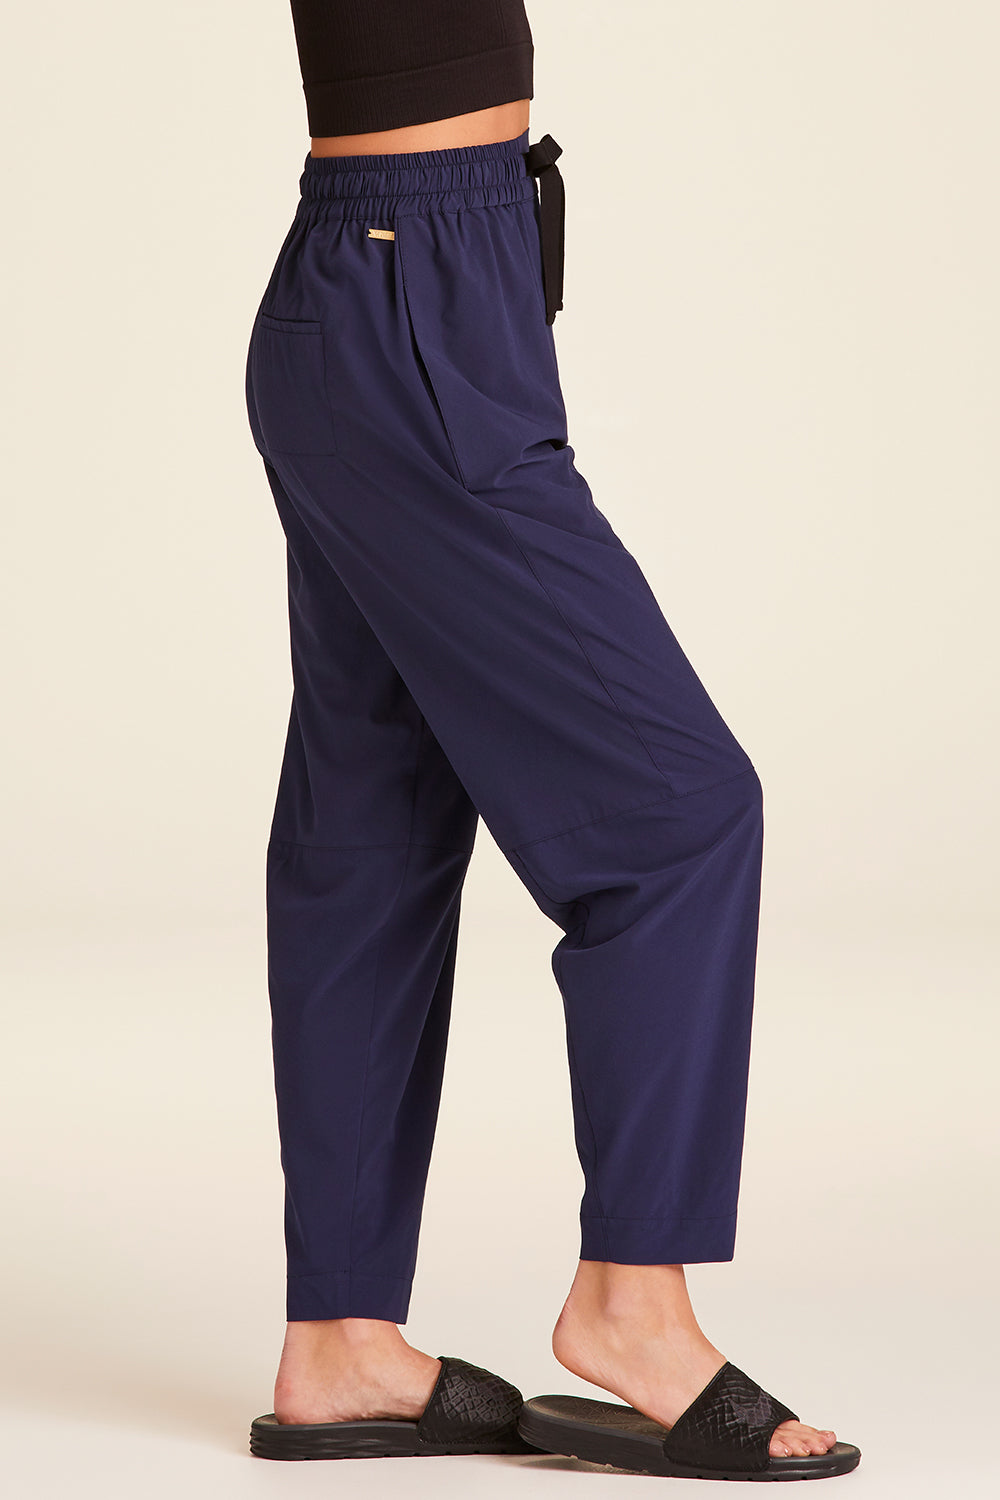 Womens Ladies Navy Blue Elastic Waist Jogger Pants Size XL 16-18